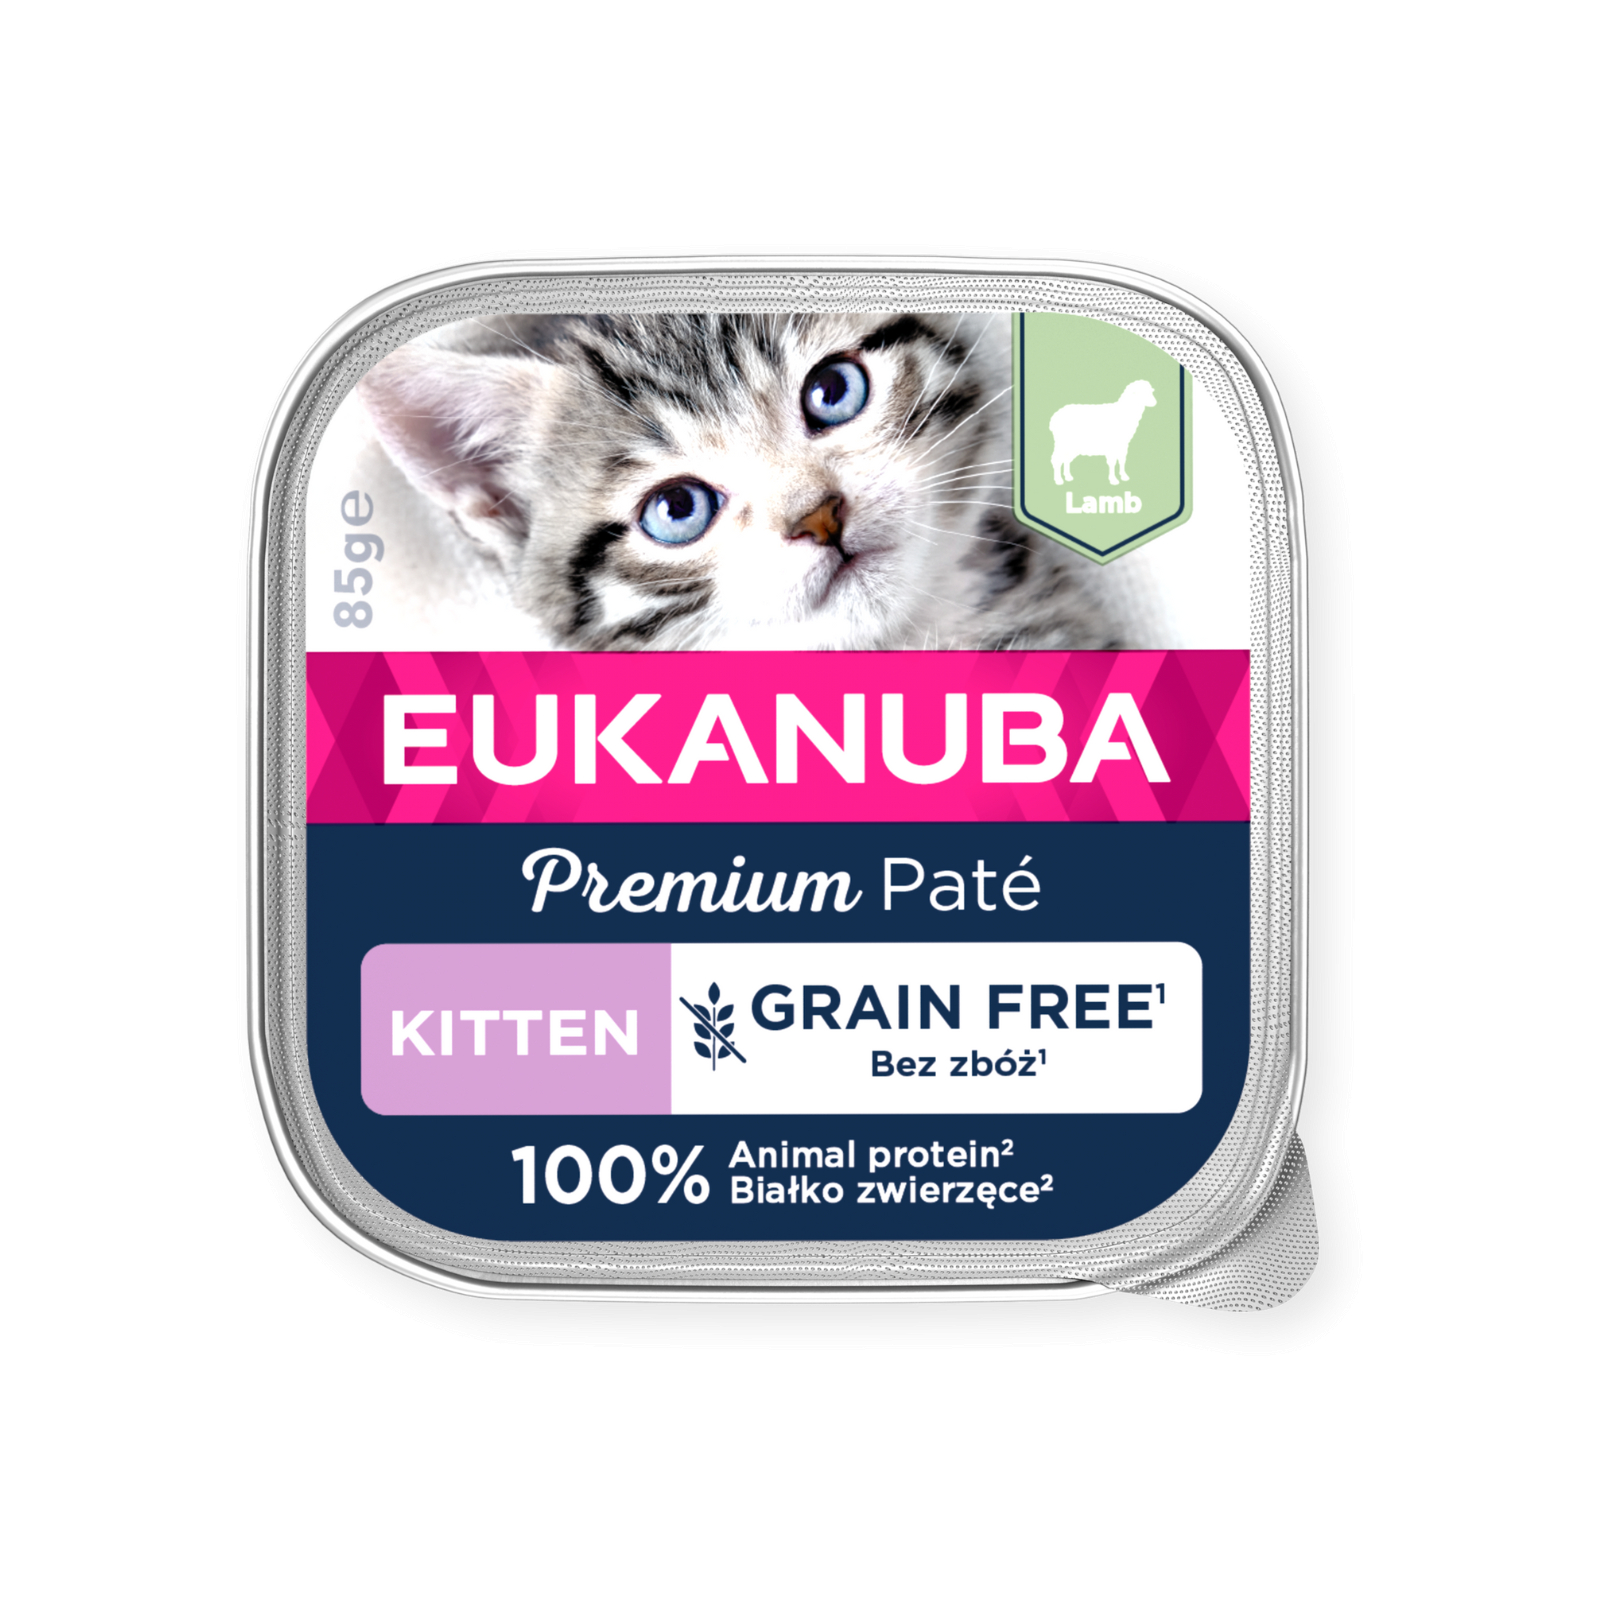 Eukanuba Kitten Cordero sin cereales Comida húmeda para gatitos